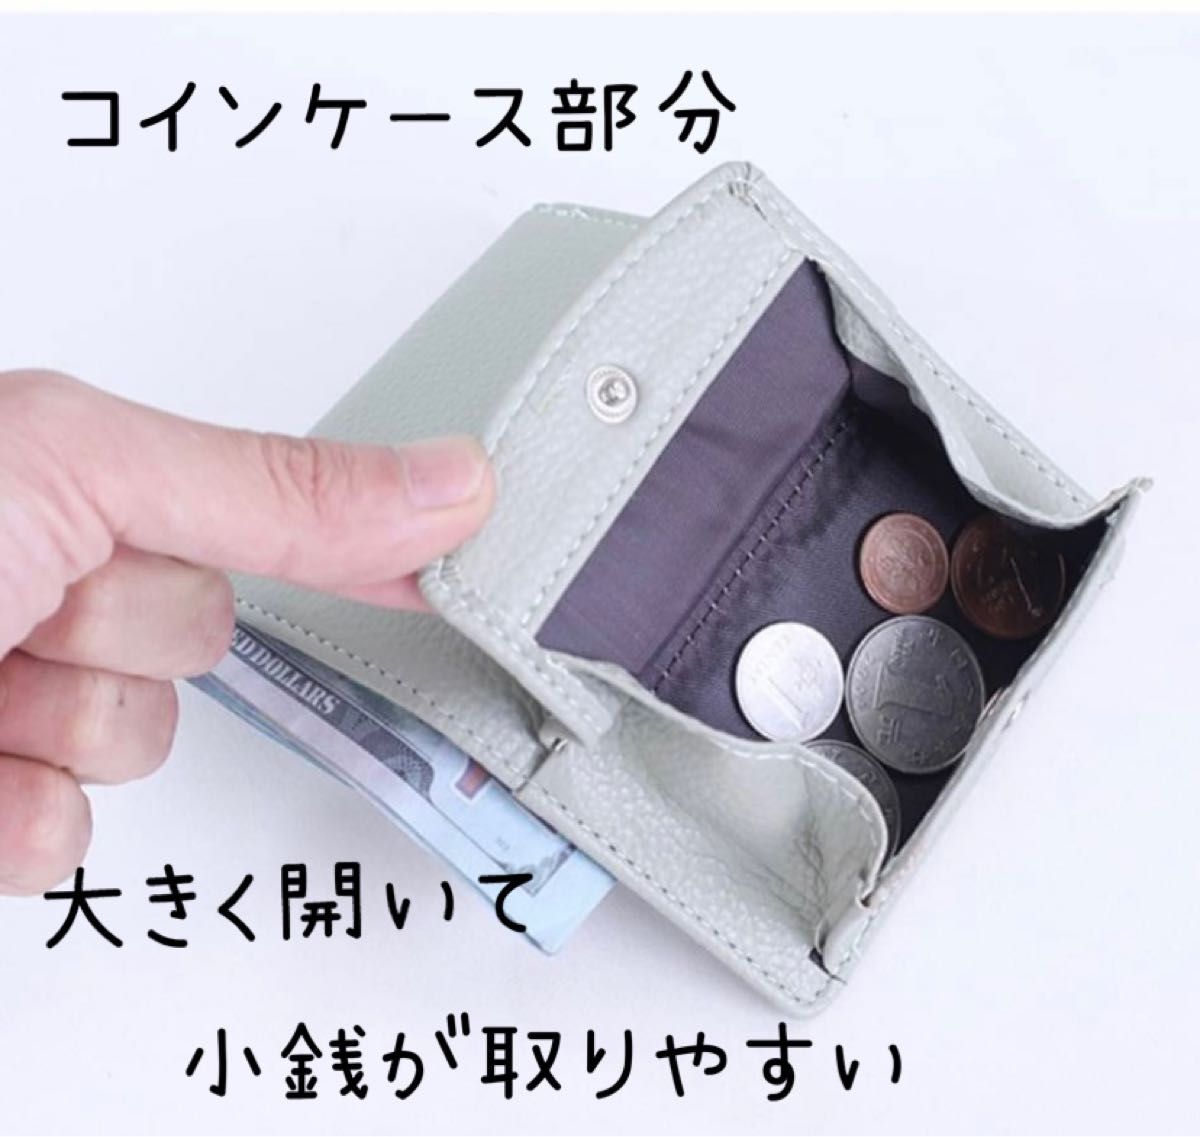 ミニウォレット グレー 三つ折財布 ミニ財布 キャッシュレス コンパクト 小銭入れ コインケース シンプル 